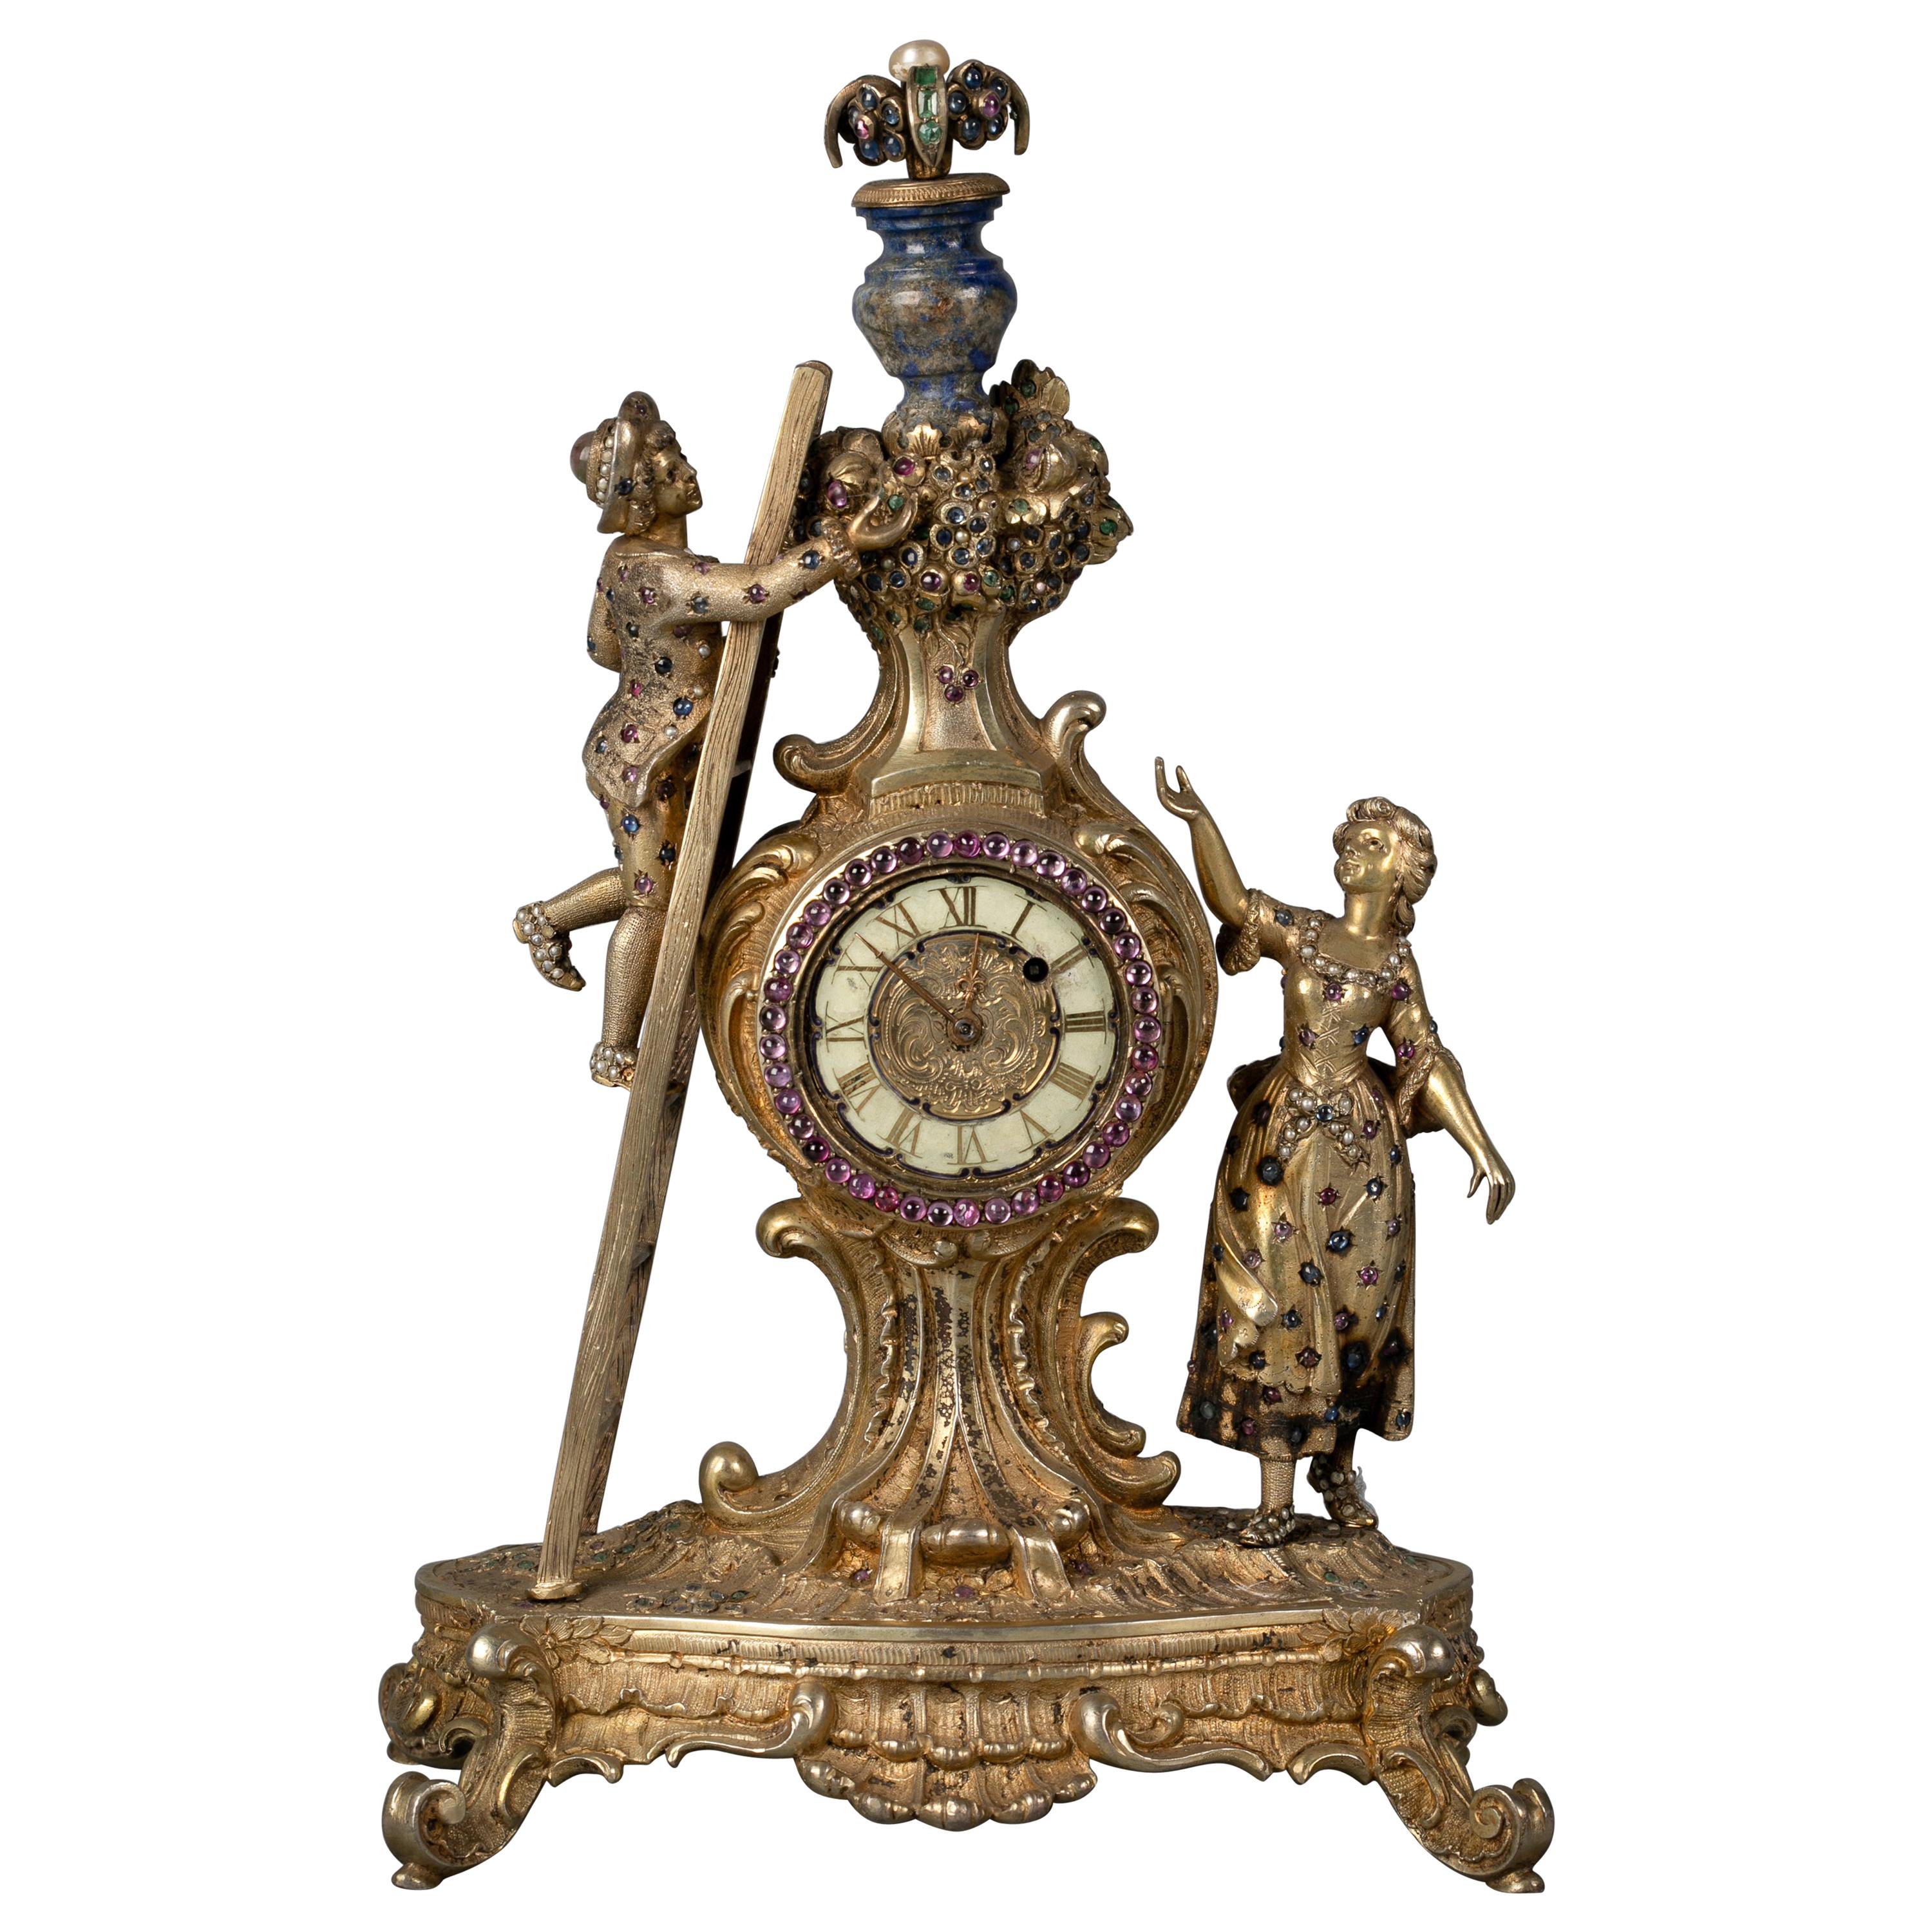 Wiener Silber vergoldete, lapislazuli- und juwelenbesetzte figurale Uhr, um 1880